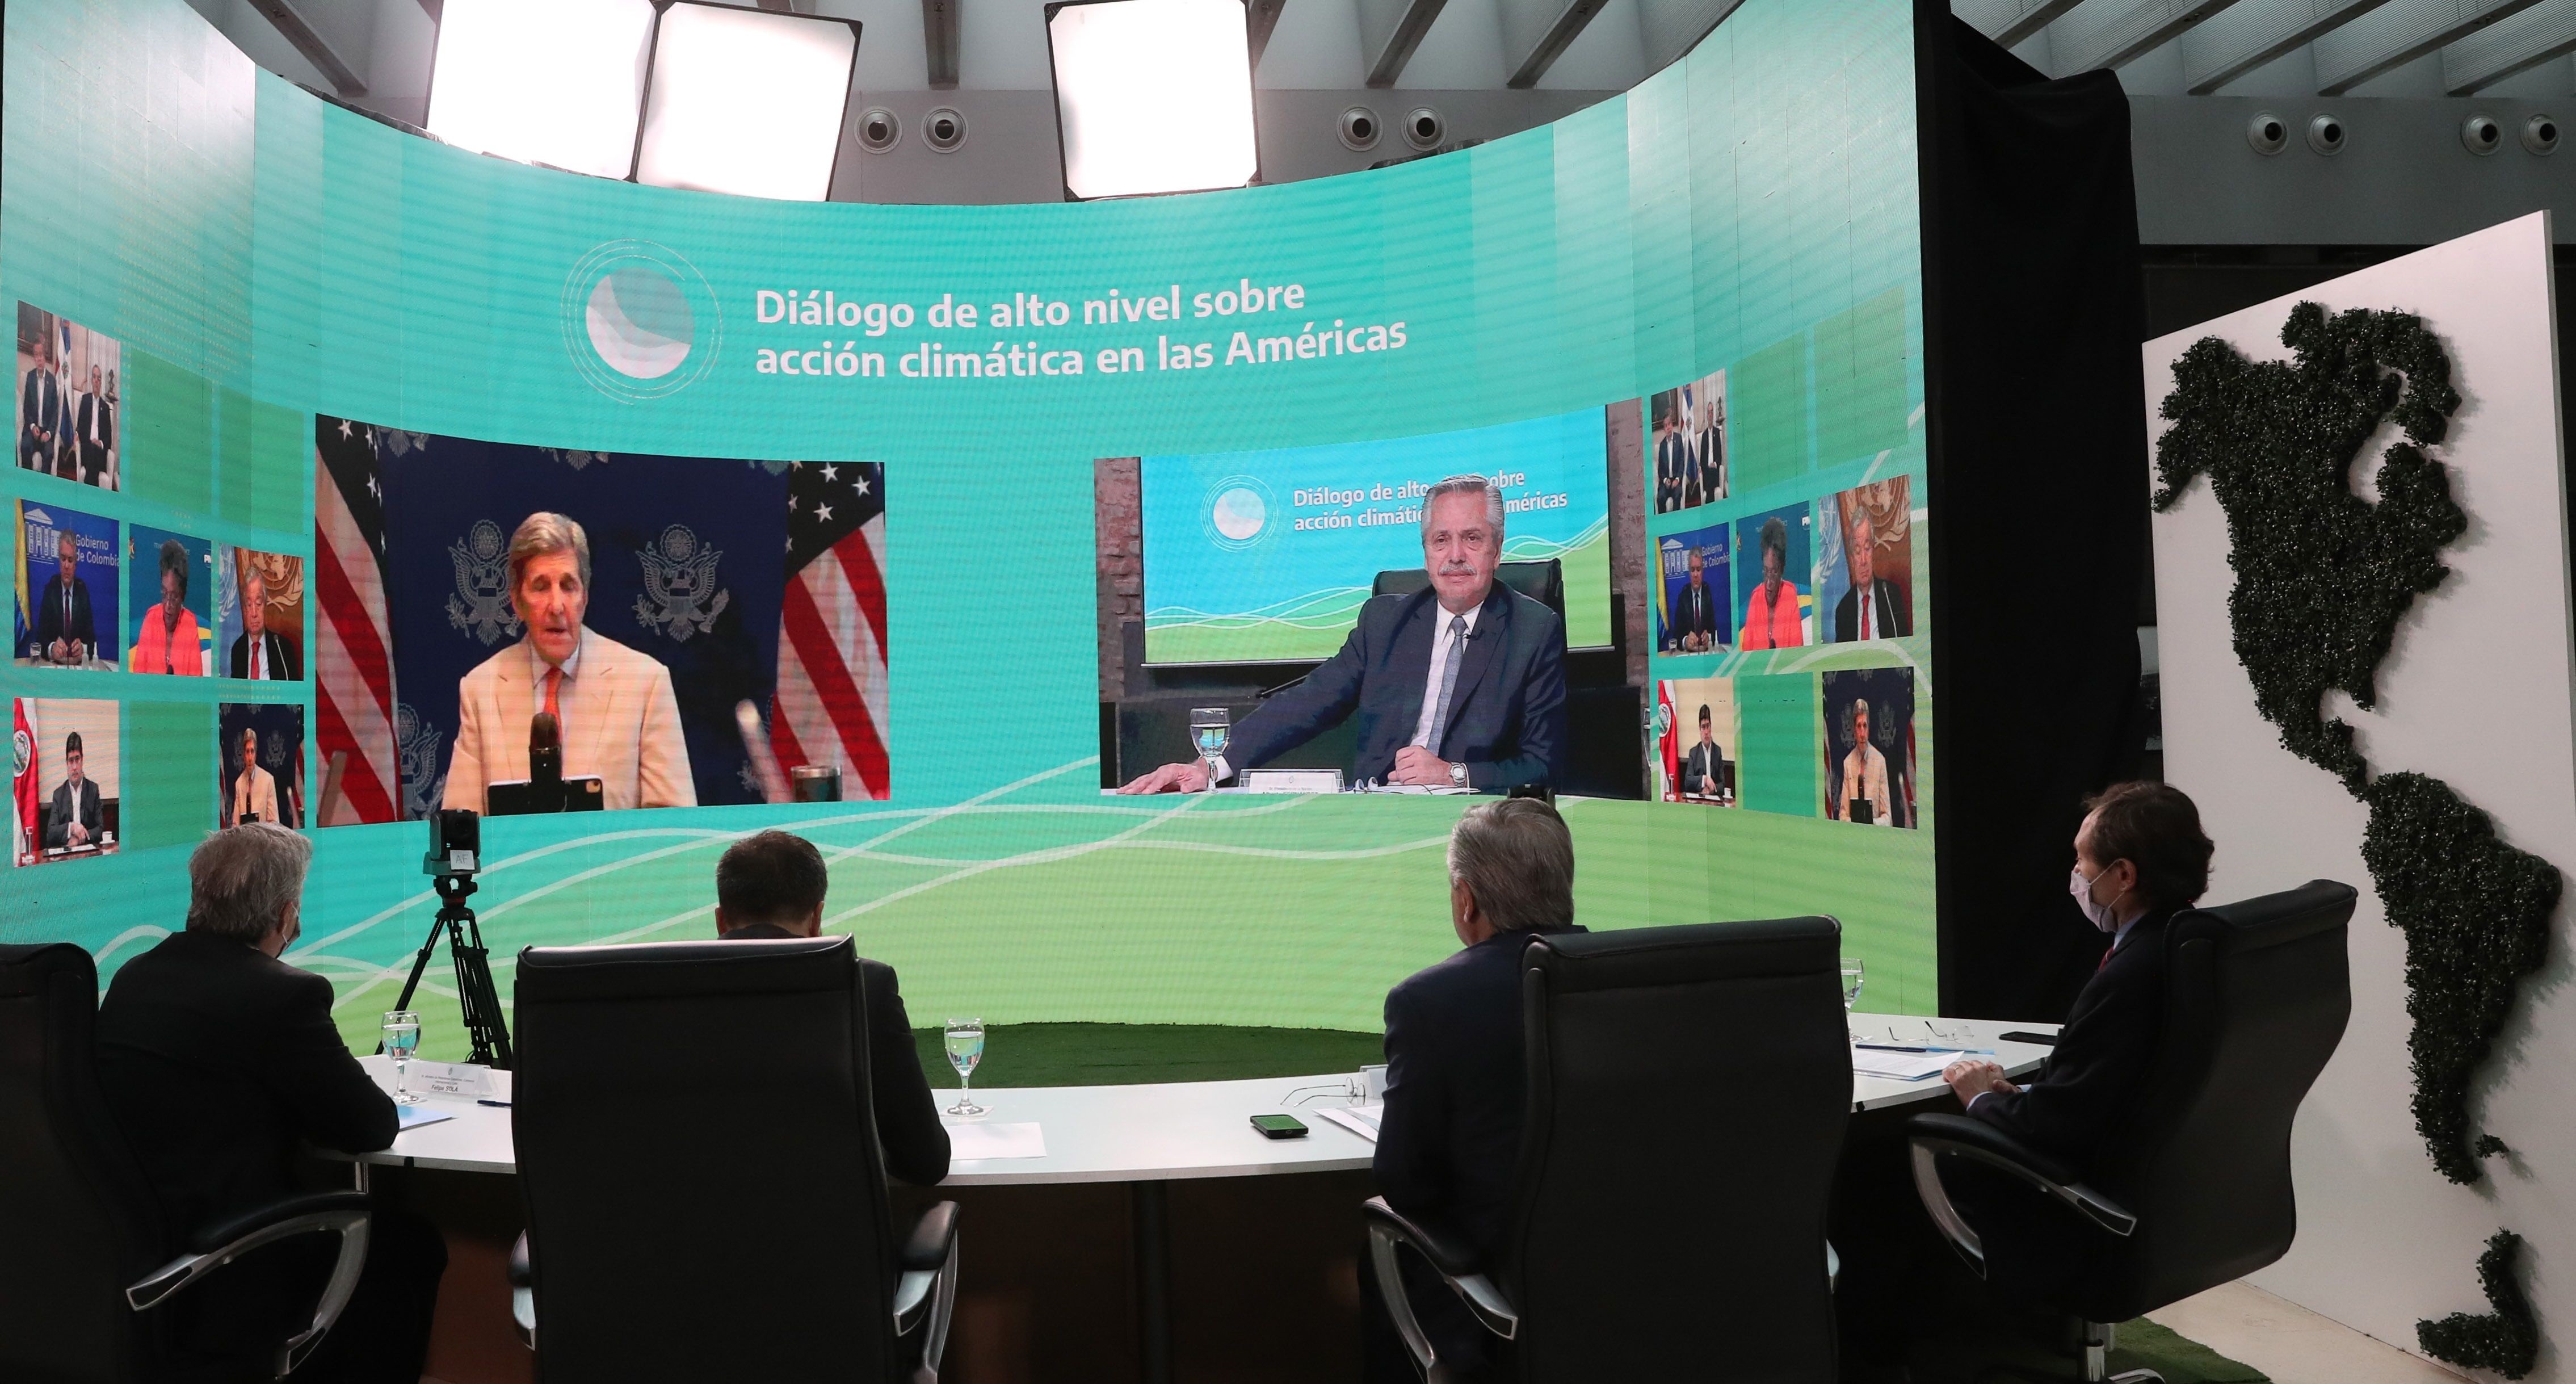 John Kerry y Alberto Fernández, durante la cumbre virtual "Diálogo de alto nivel sobre acción climática en las Américas"